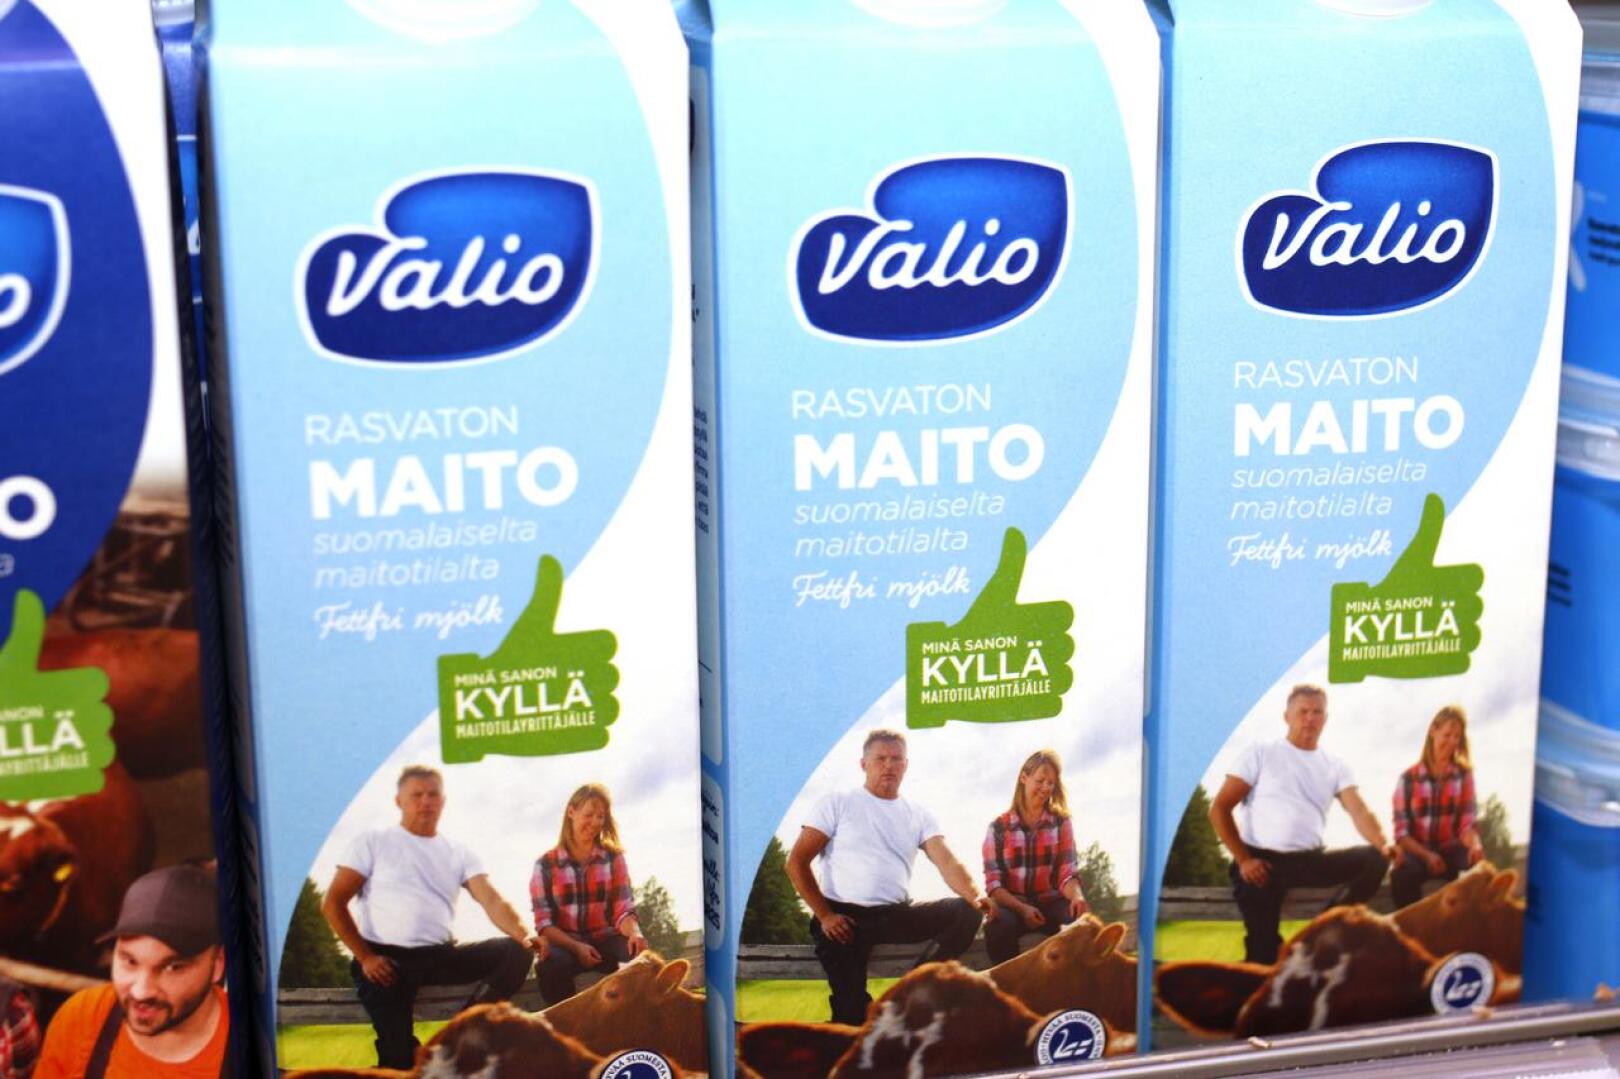 Jatkossa kaikissa Kalajoen kouluissa tarjotaan rasvatonta maitoa.